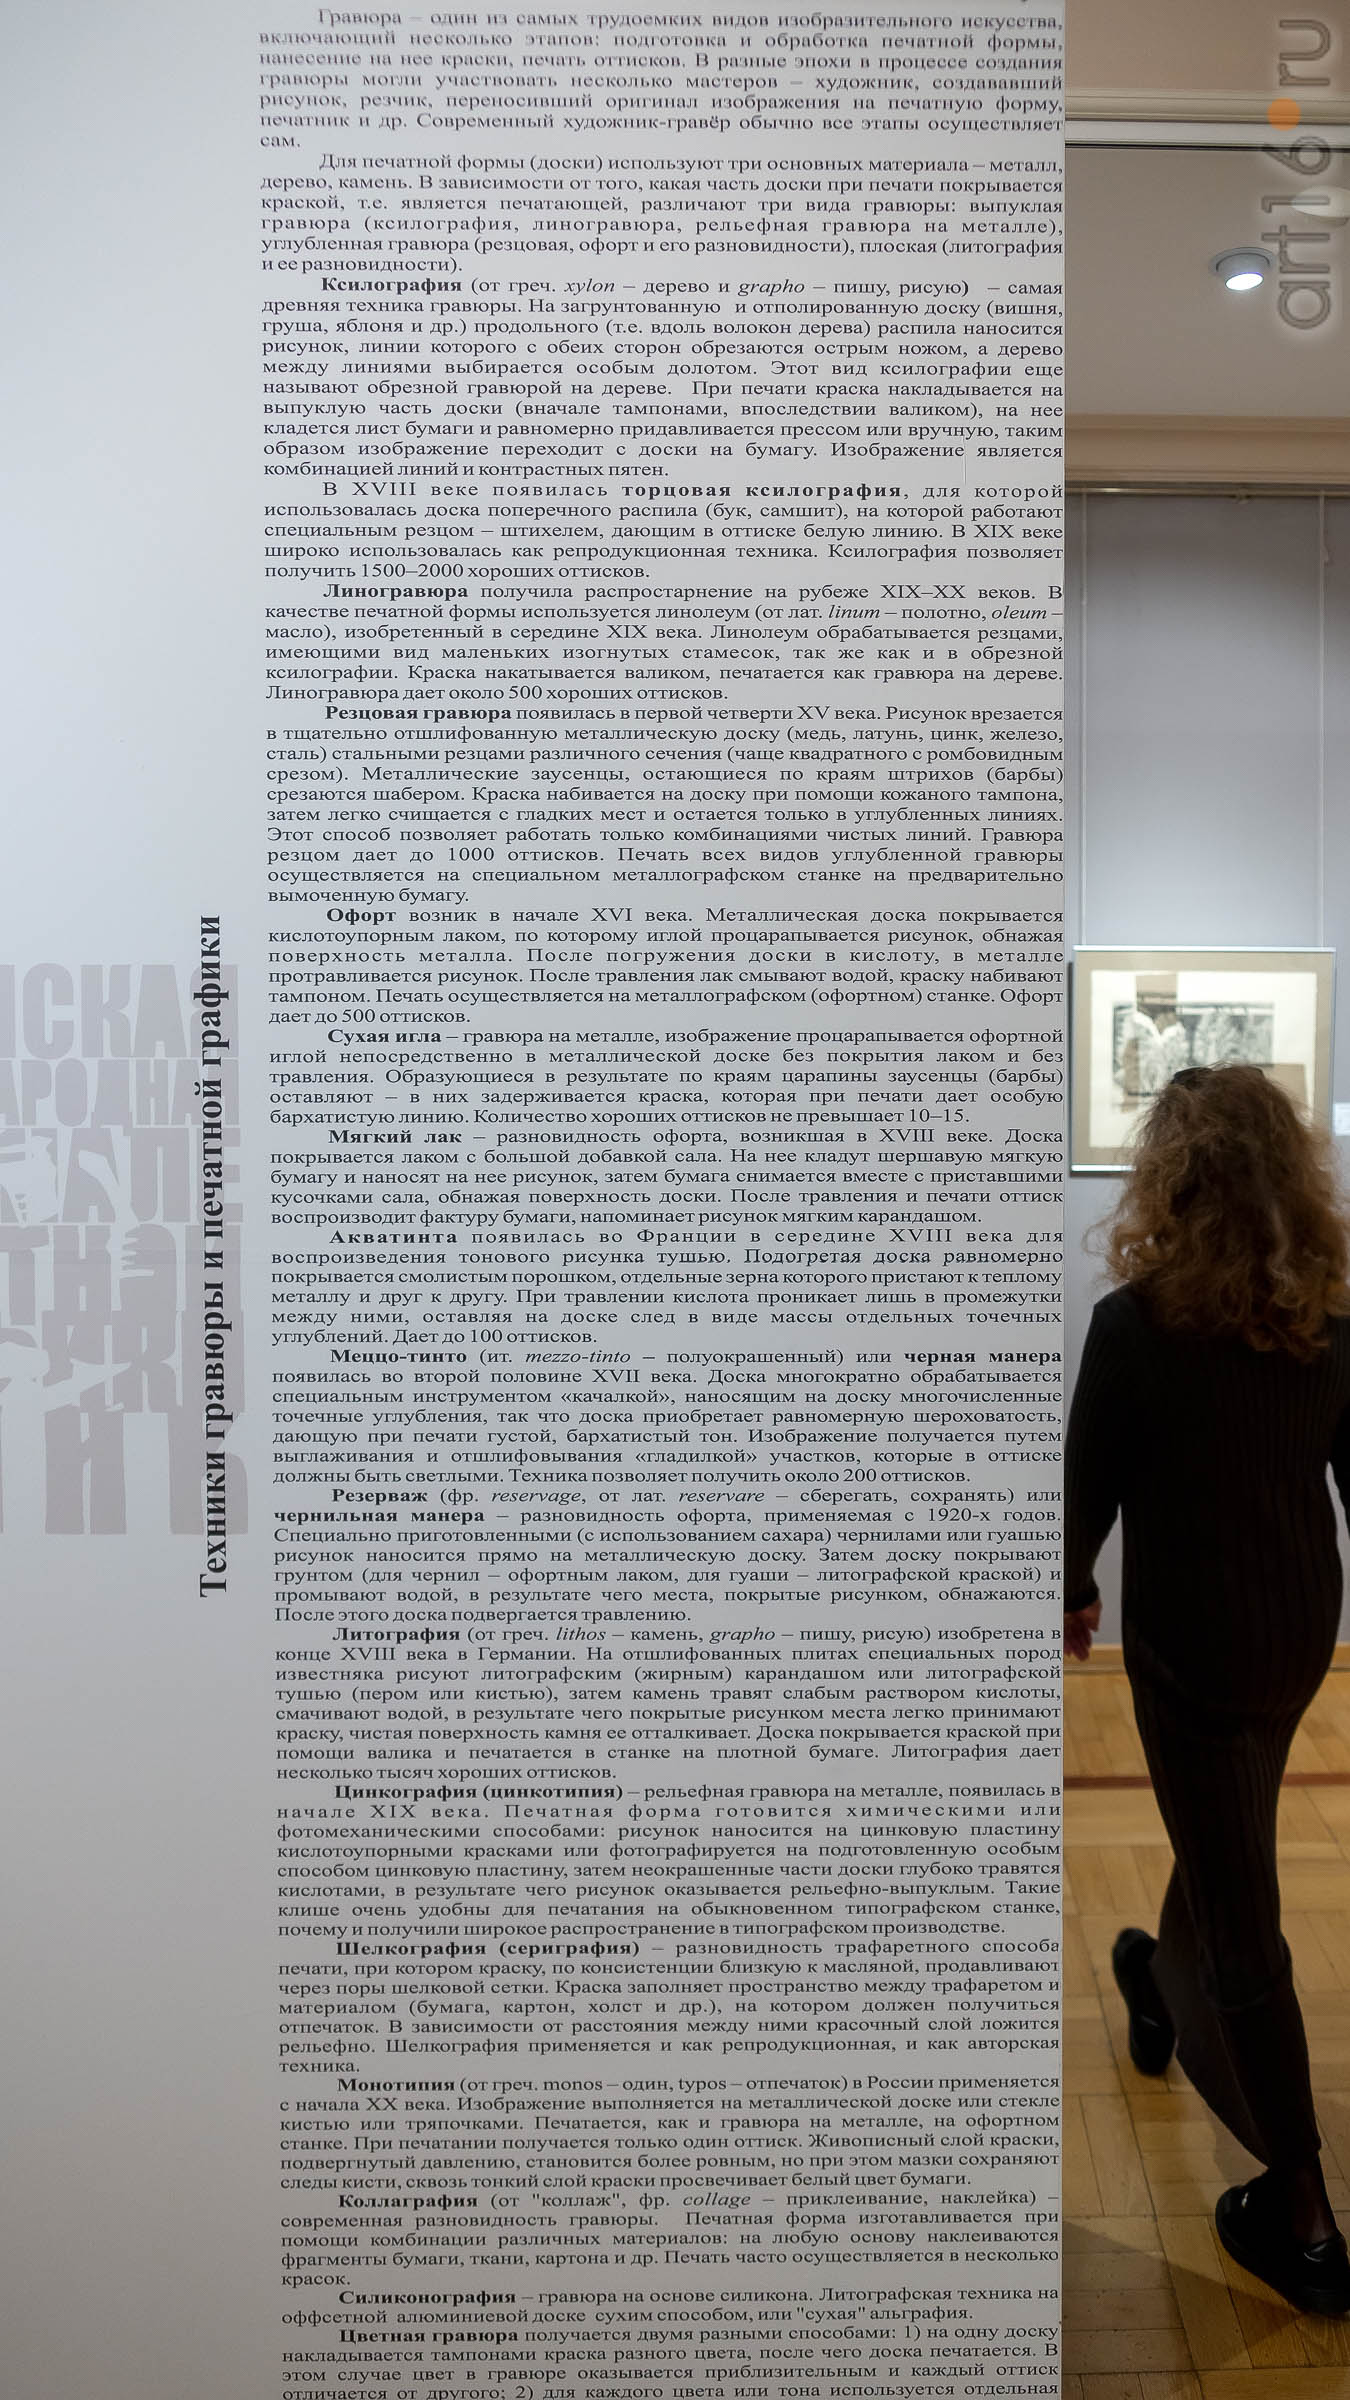 В экспозиции выставки V Казанской биеннале печатной графики ʺВсадникʺ::5-я Казанская международная биеннале печатной графики «Всадник»